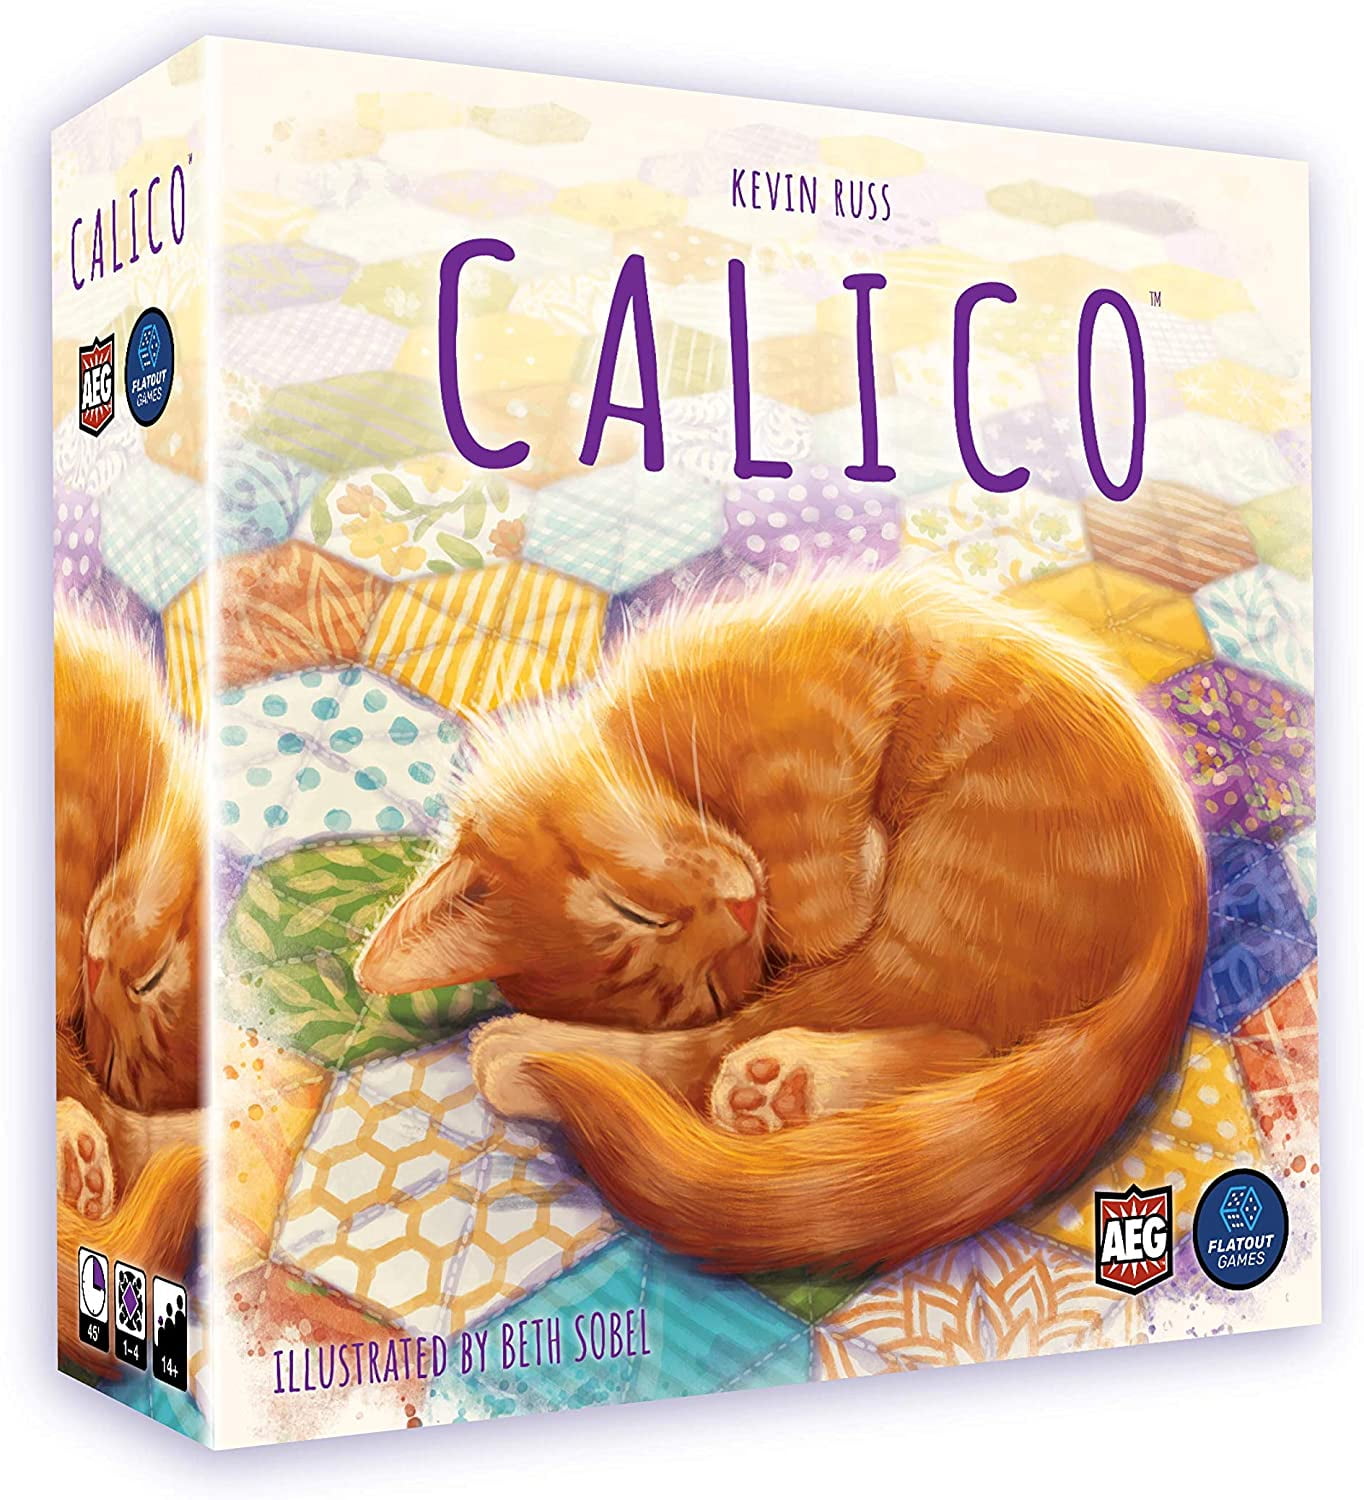 Calico Cat Ceramic Tile Unique Cat Gifts Cat Lover Gift Cat Decorative Tile